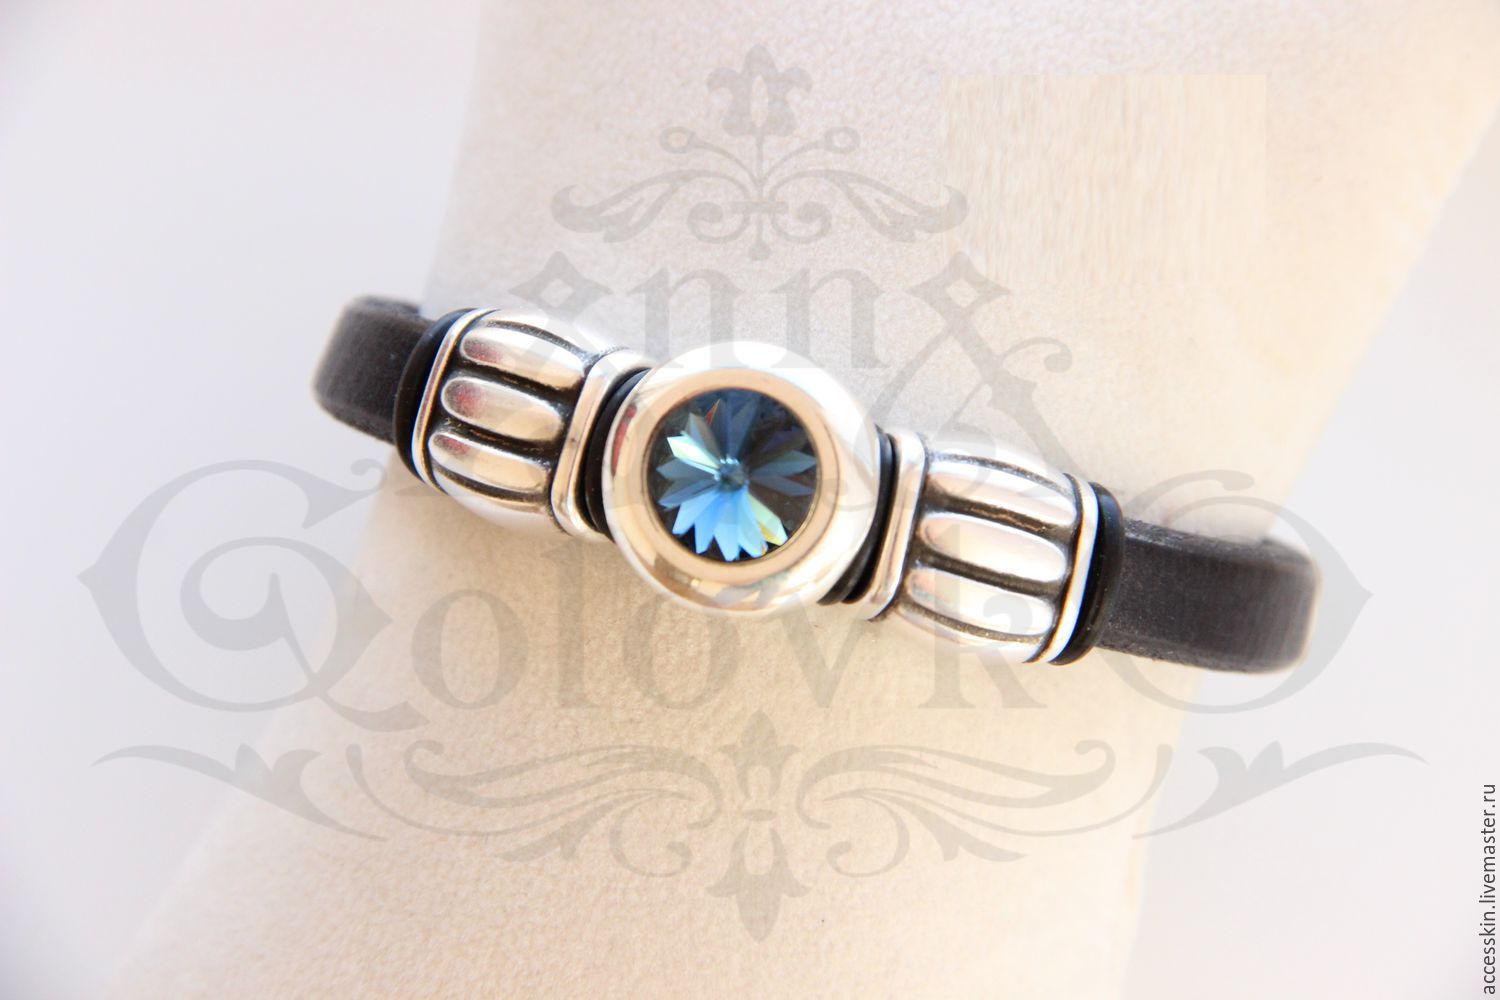 Кожаный браслет Regaliz с синим кристаллом Сваровски